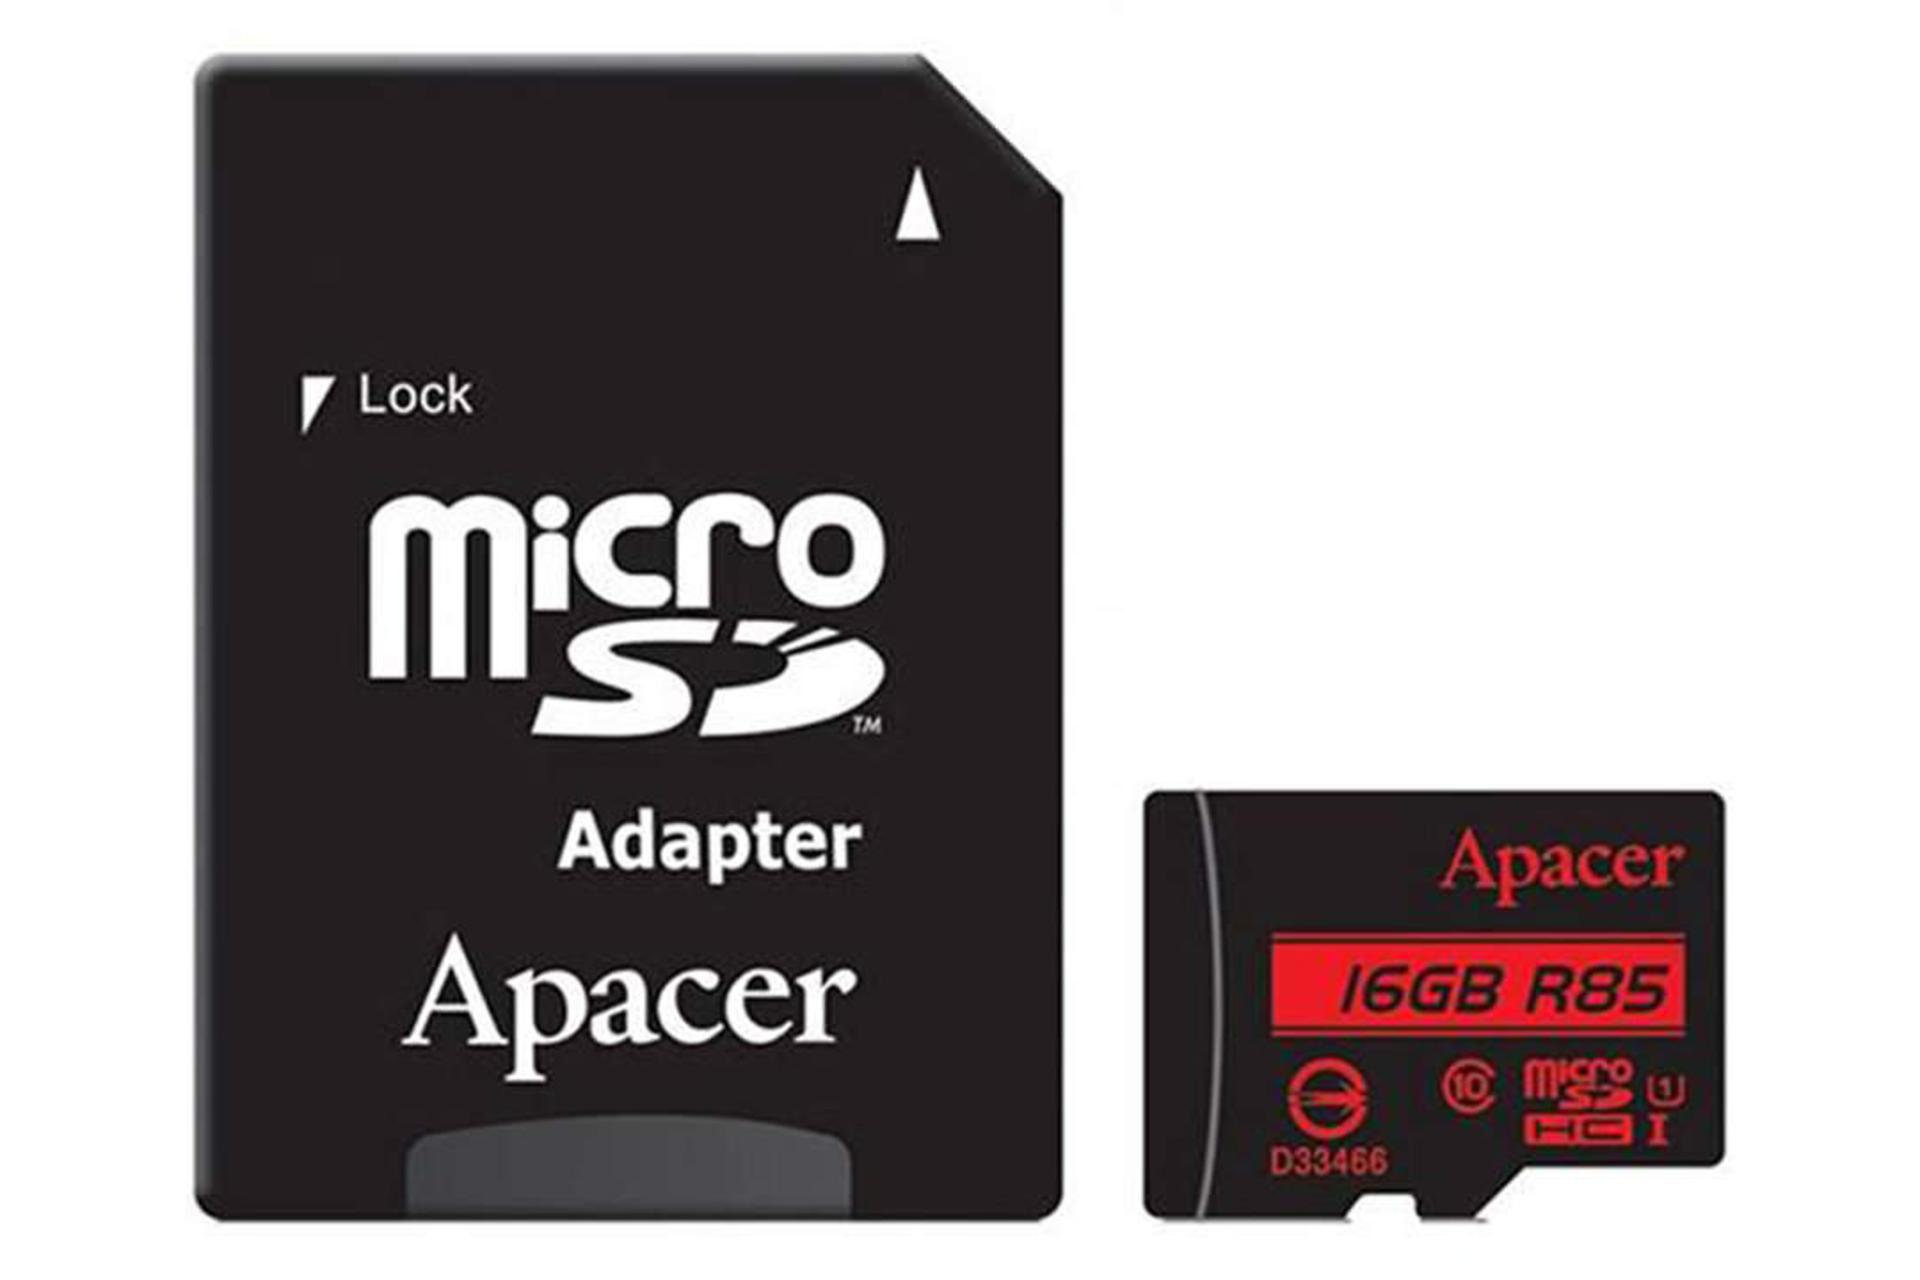 Apacer R85 microSDHC Class 10 UHS-I U1 16GB